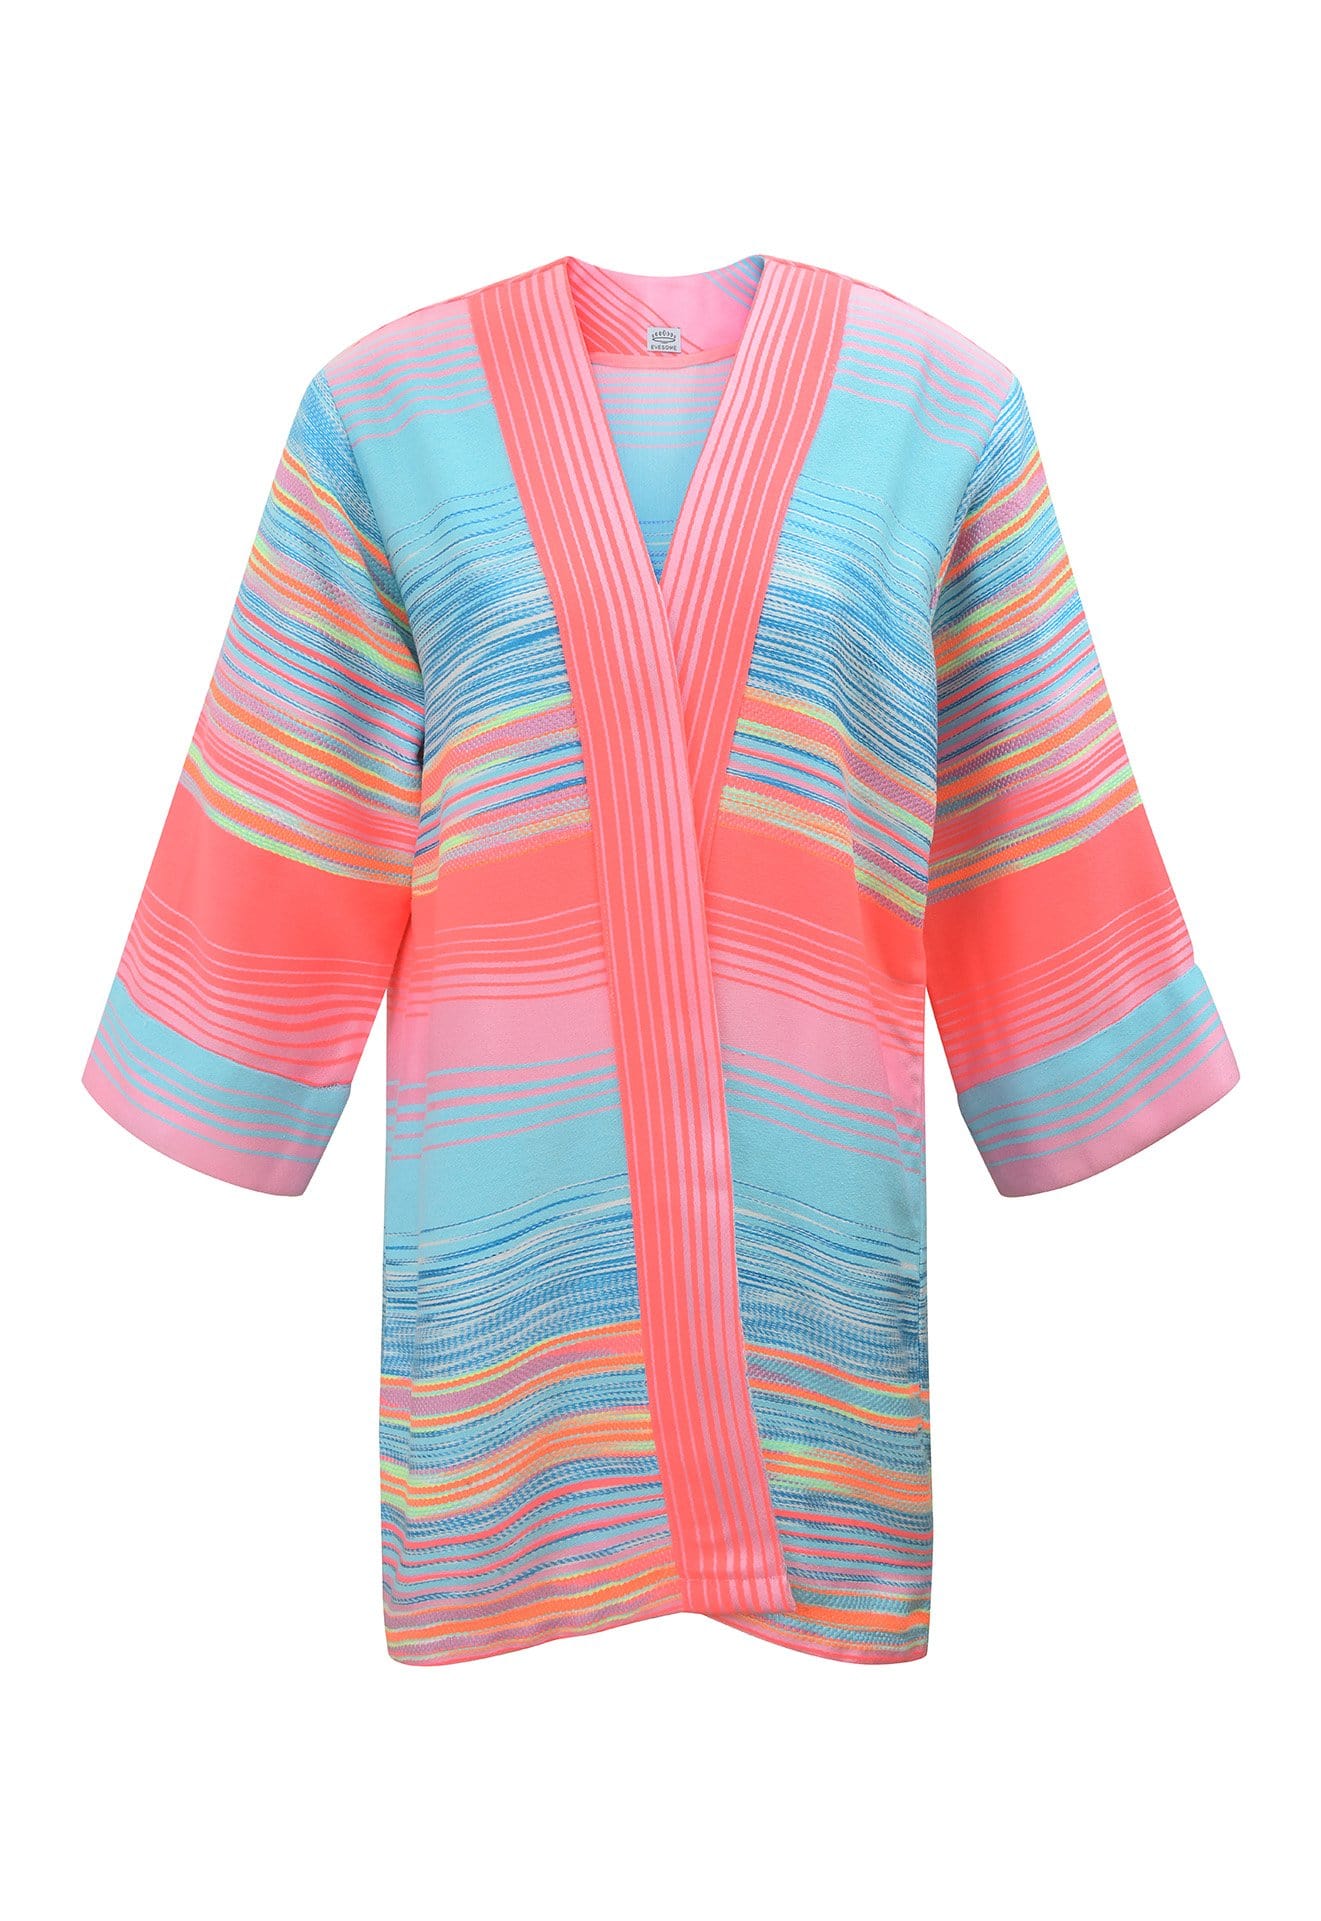 Kimono en tweed rose, bleu ciel et jaune tissé et fabriqué en France